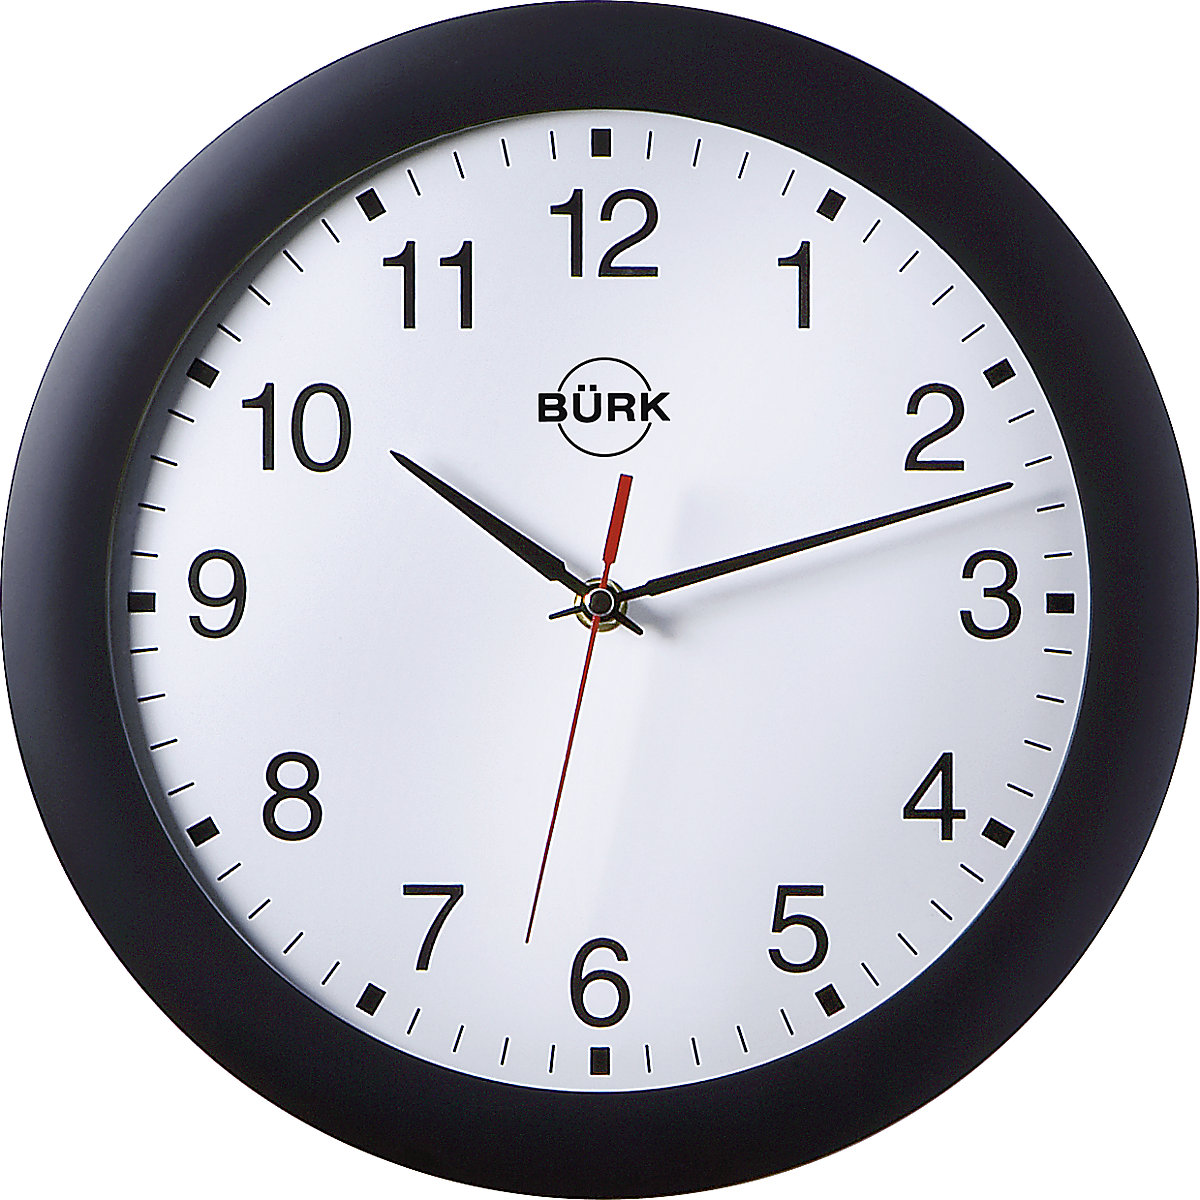 Zegar ścienny z tworzywa ABS, Ø 300 mm, kwarcowy mechanizm zegarowy, obudowa czarna, cyferblat biały-2